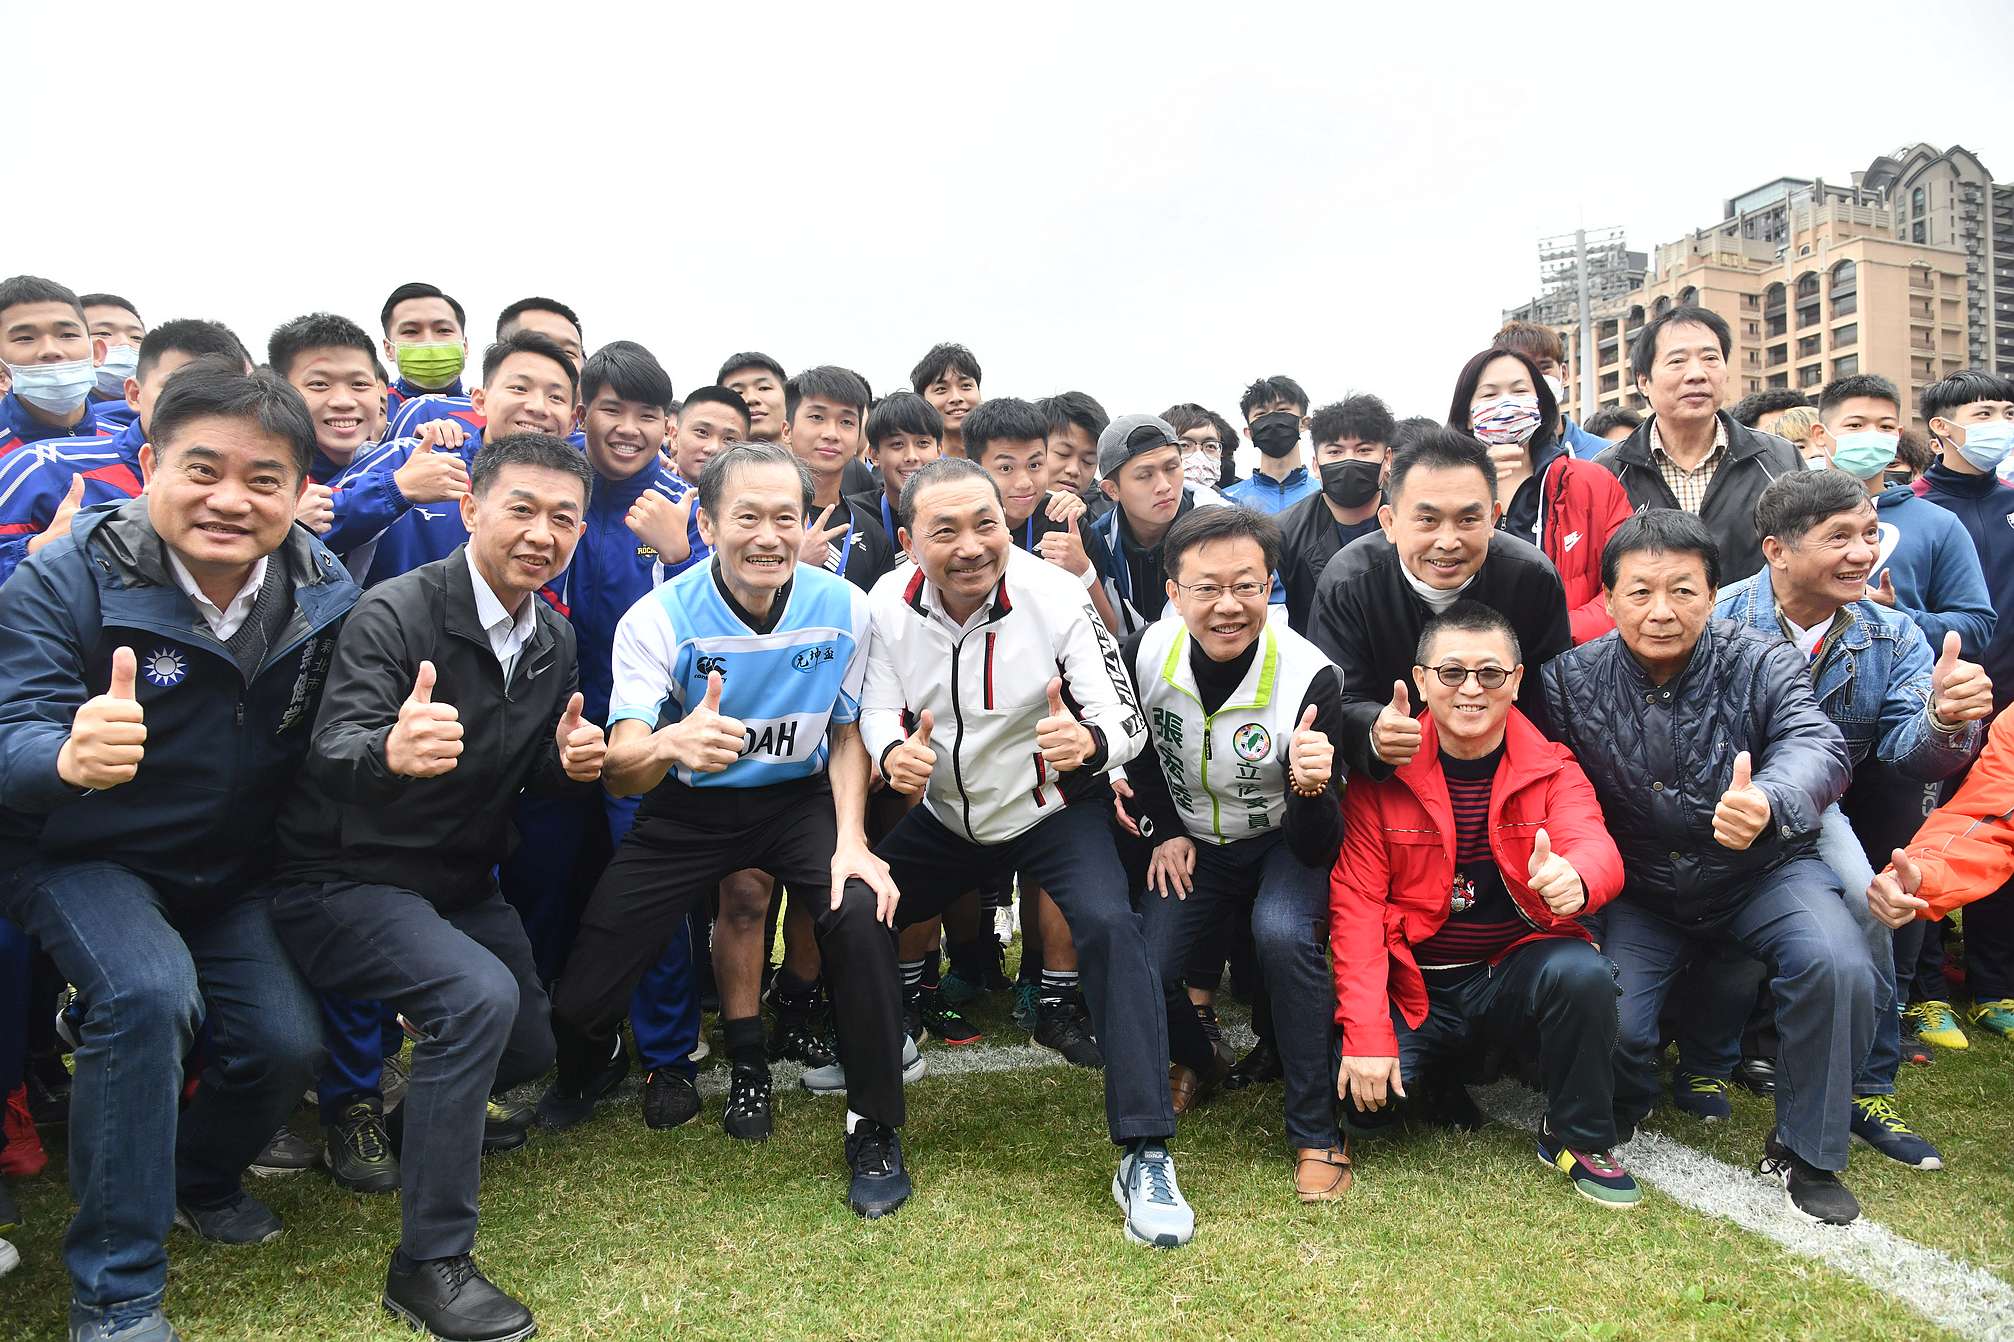 元坤盃大專橄欖球邀請賽熱血開打 侯友宜傳達「熱情、勇氣、堅持」的運動家精神